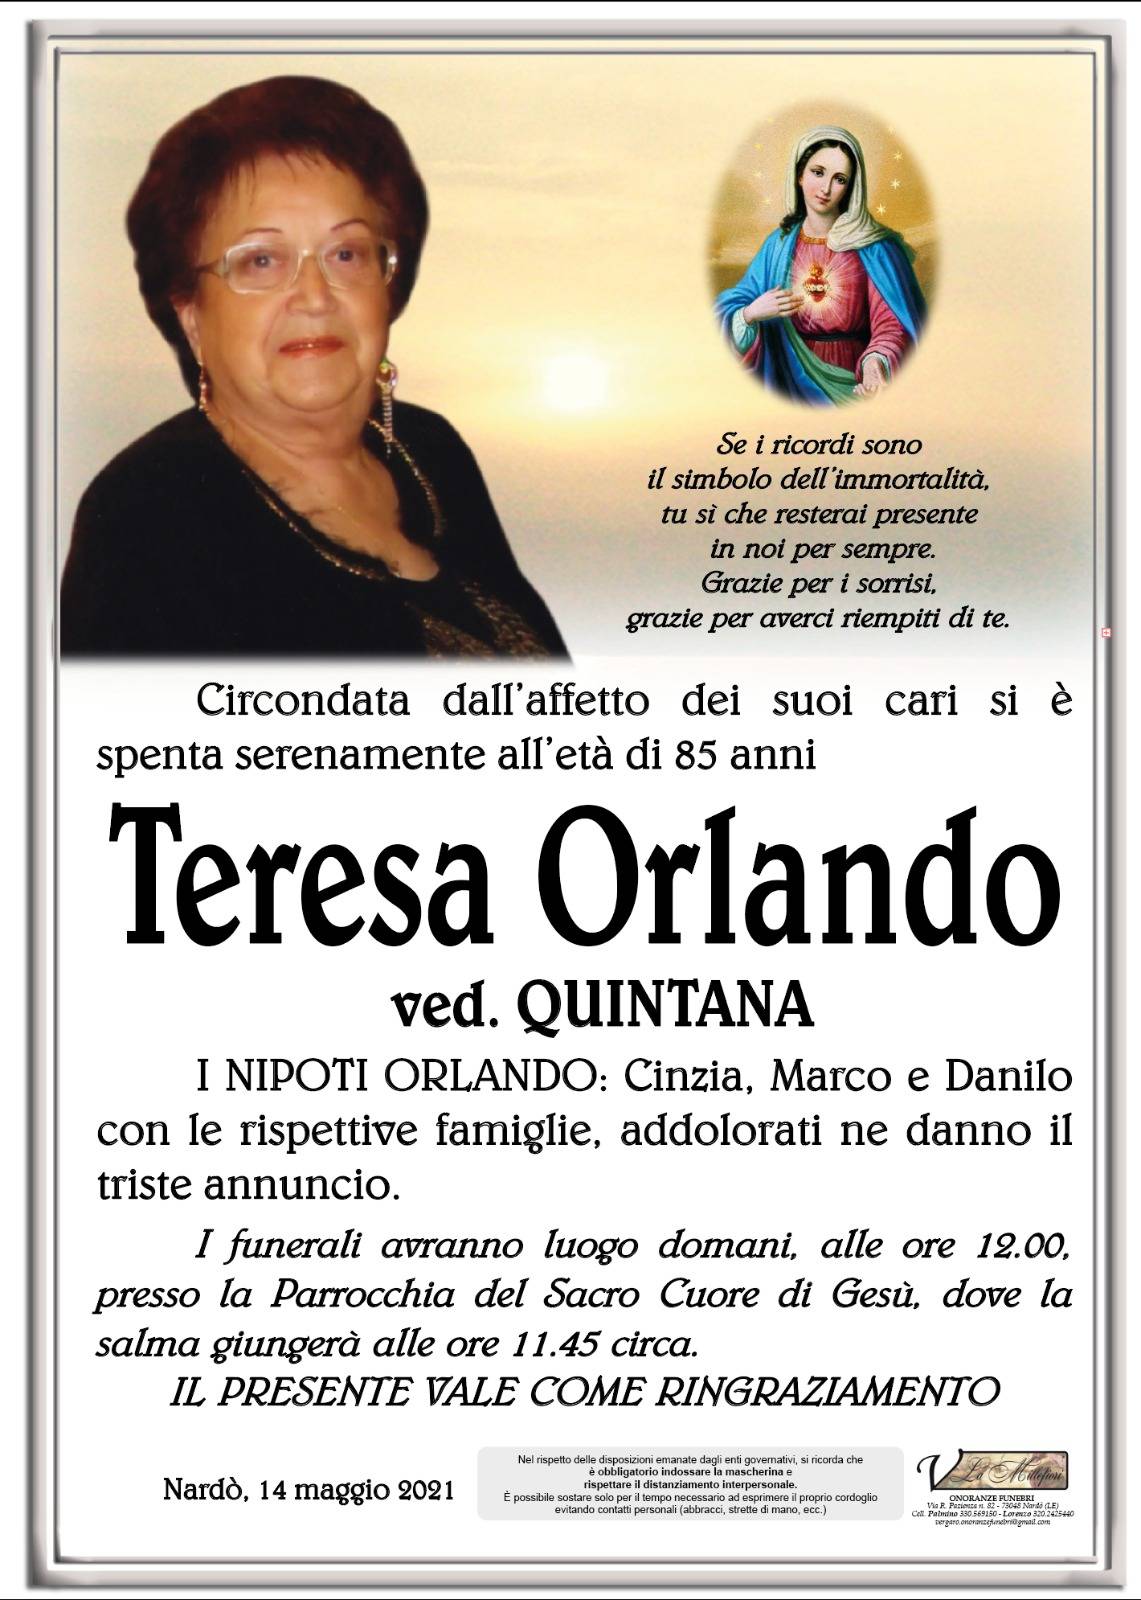 Teresa Orlando